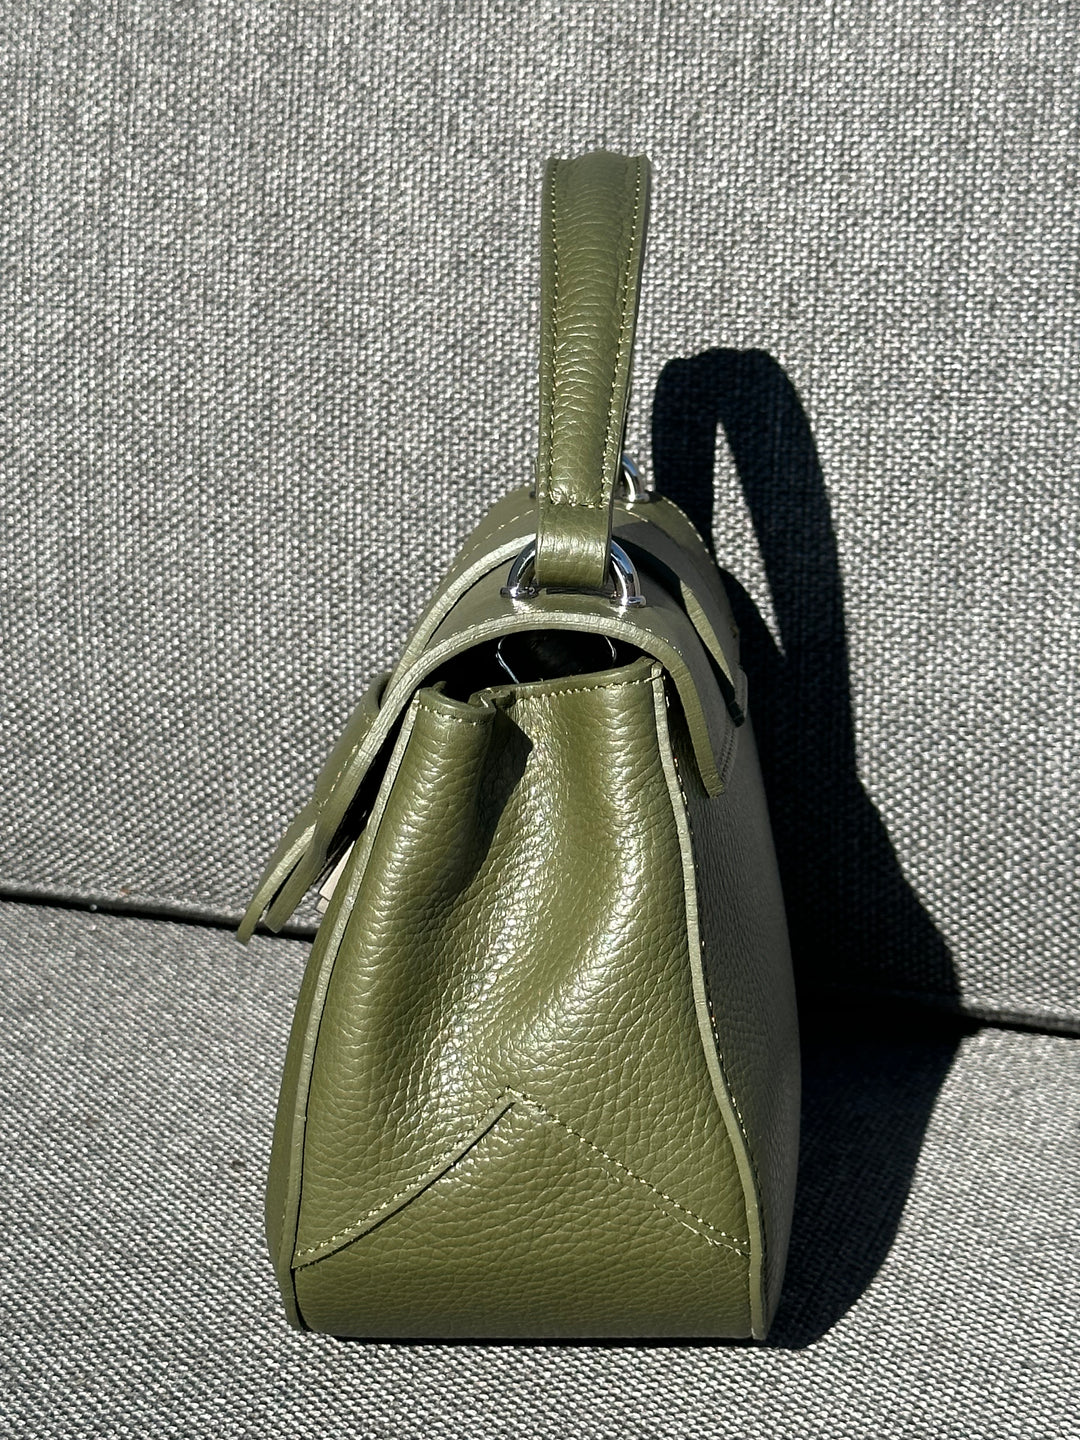 olijfgroene handtas van leder - axent - 89710 - grote maten - dameskleding - kledingwinkel - herent - leuven